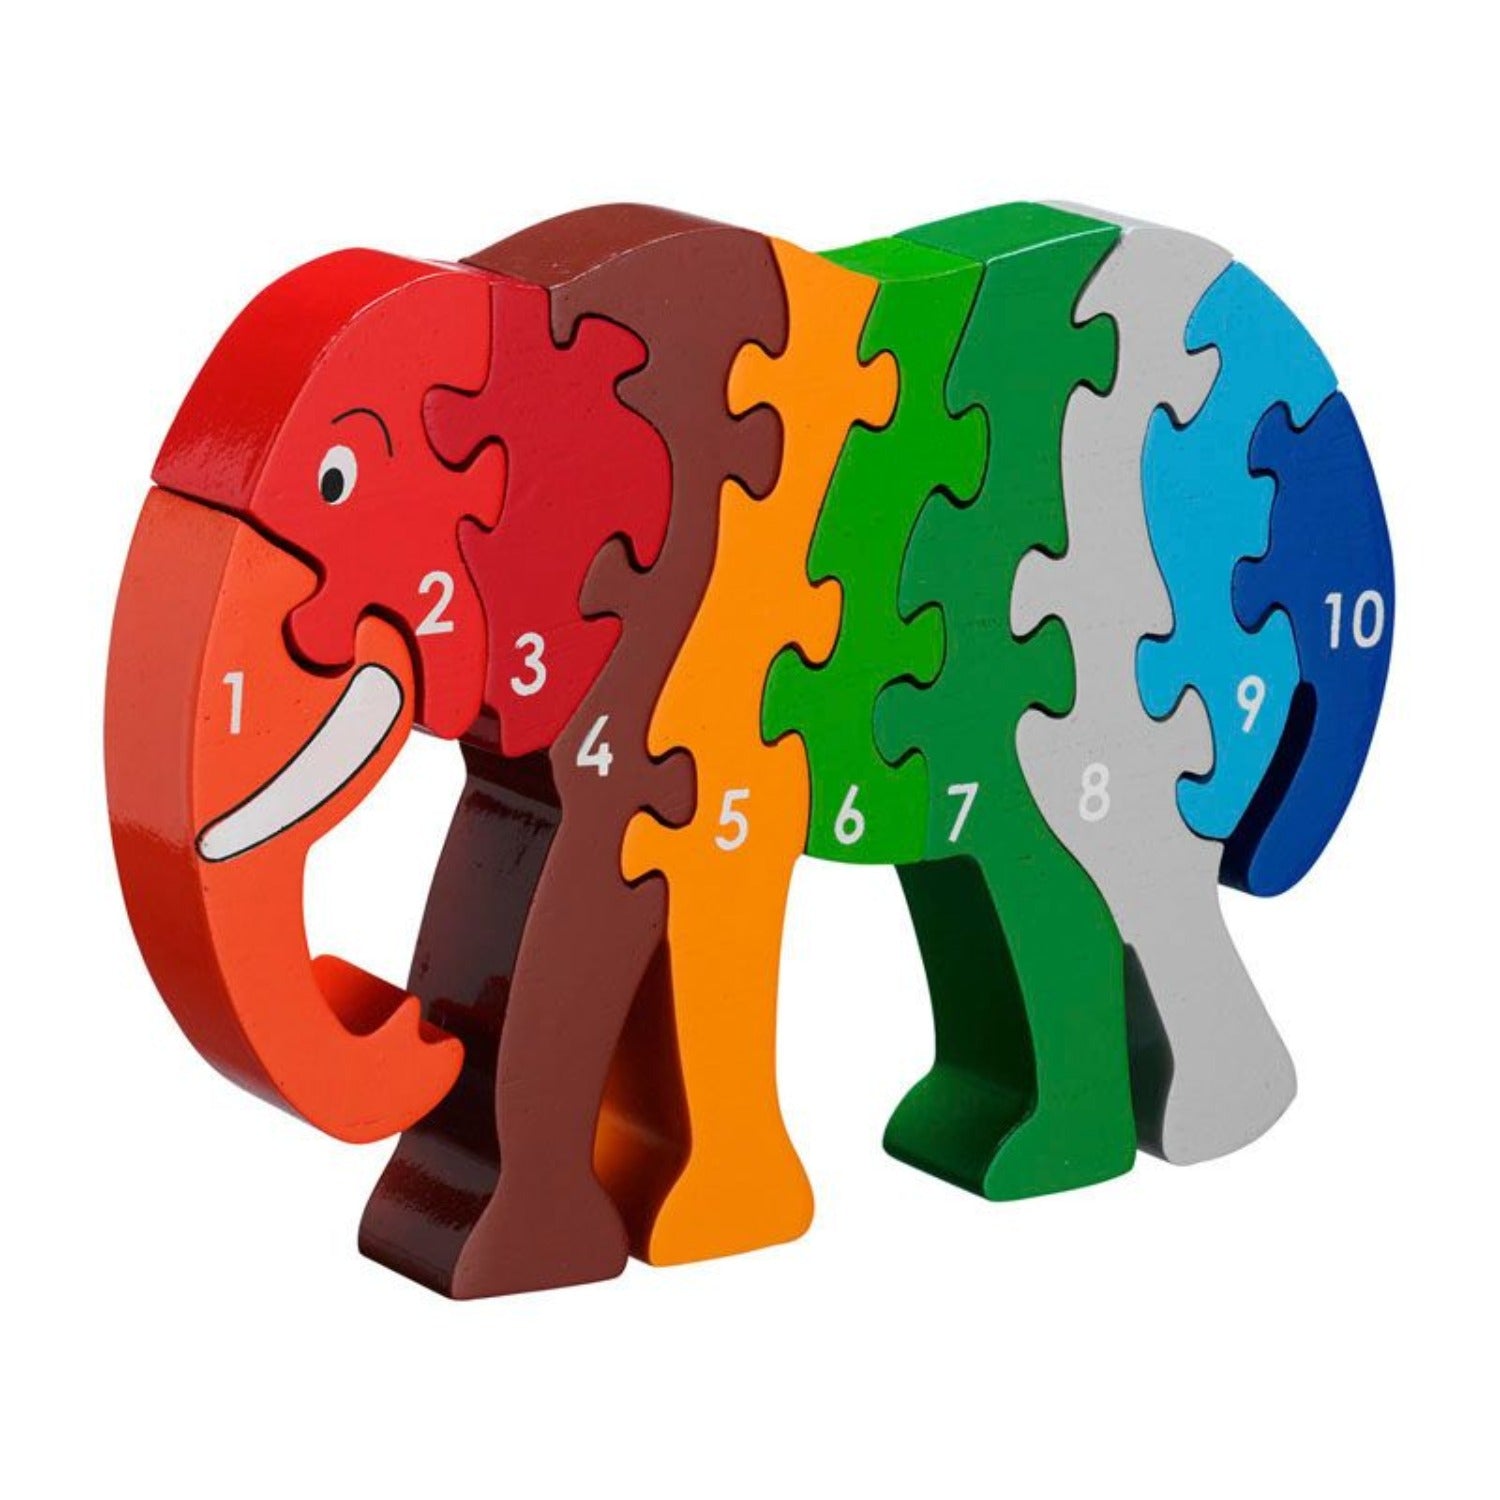 Elephant 1-10 Puzzle